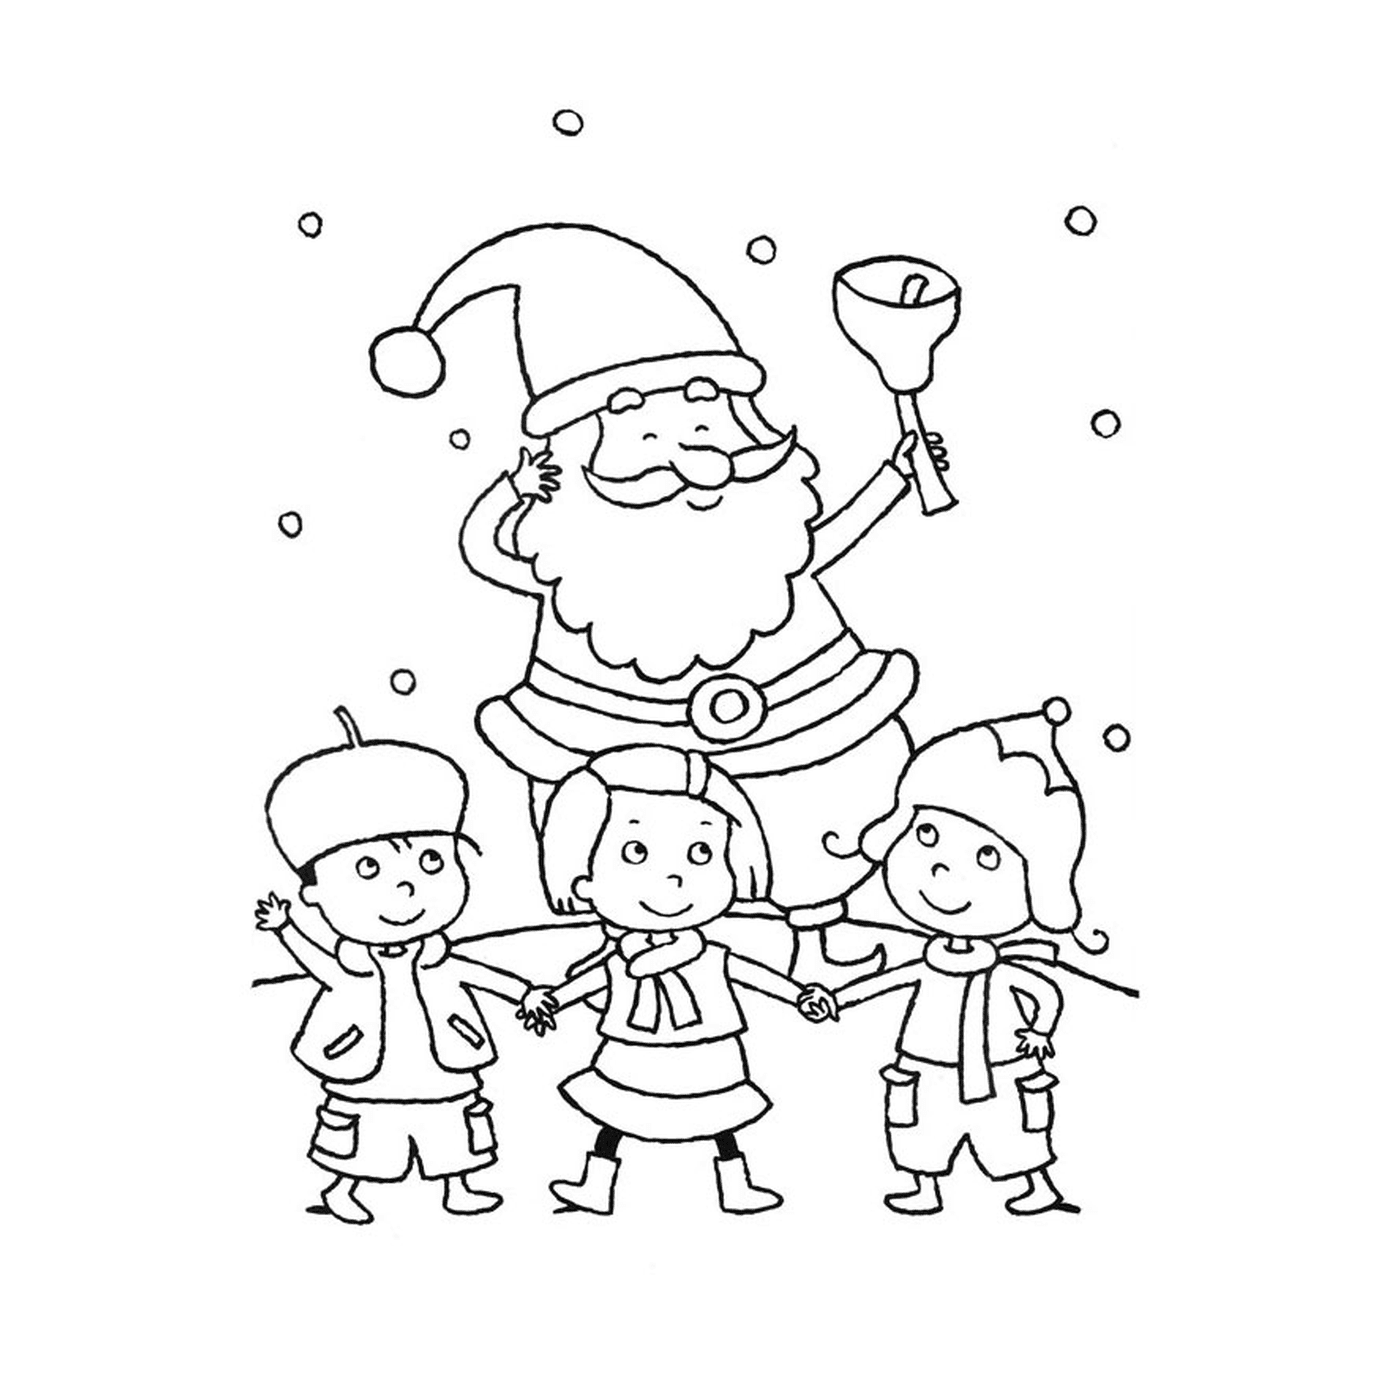  Gruppe von Kindern rund um den Weihnachtsmann 